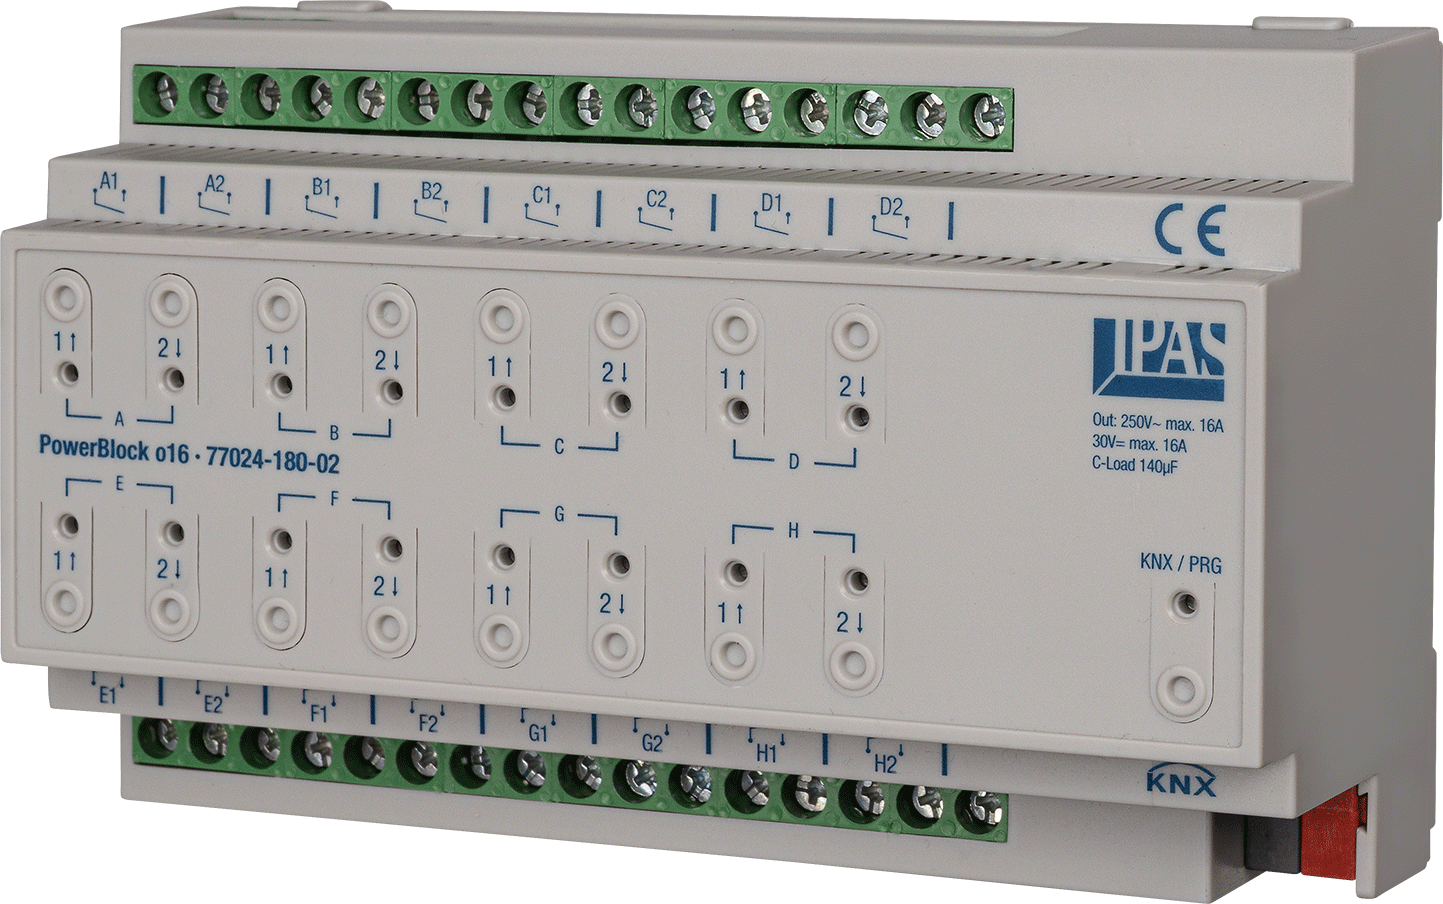 Actuador multifunción KNX, PowerBlock o16, conmutación / persianas, 16 salidas binarias / 8 canales persianas, 16A, 140µF C-load, carril DIN, serie PowerBlock, Ref. 77024-180-02